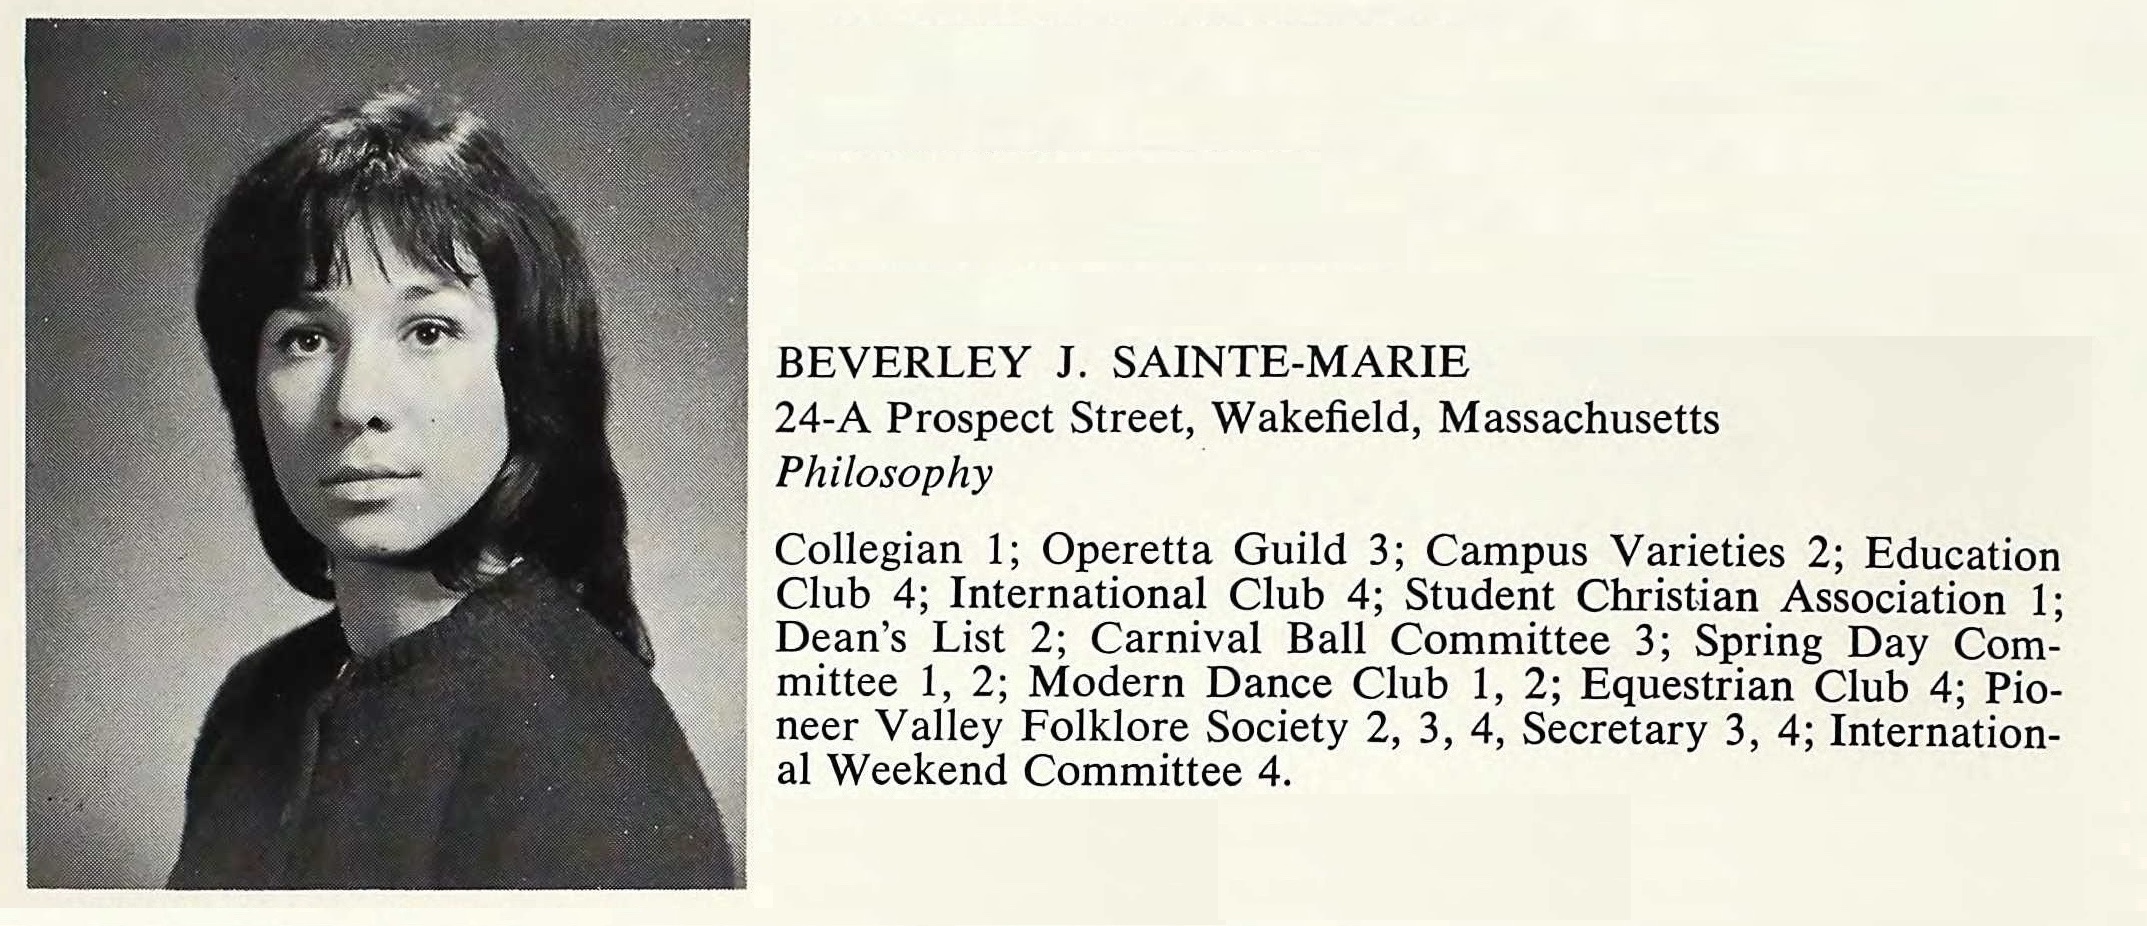 Beverley J. Sainte-Marie